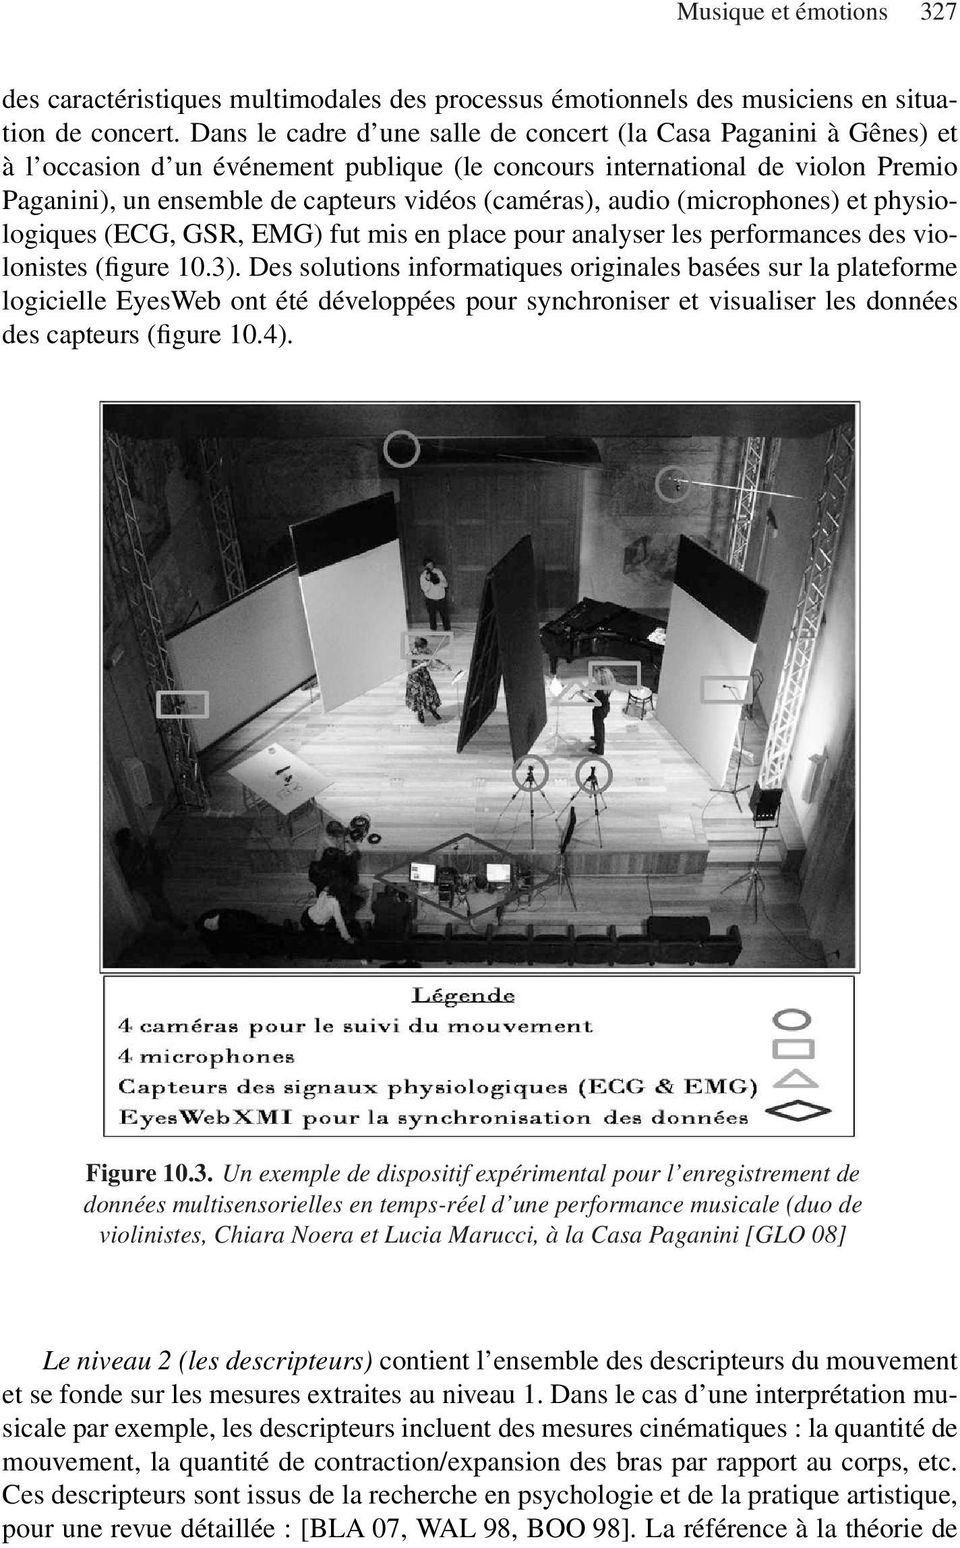 (caméras), audio (microphones) et physiologiques (ECG, GSR, EMG) fut mis en place pour analyser les performances des violonistes (figure 10.3).